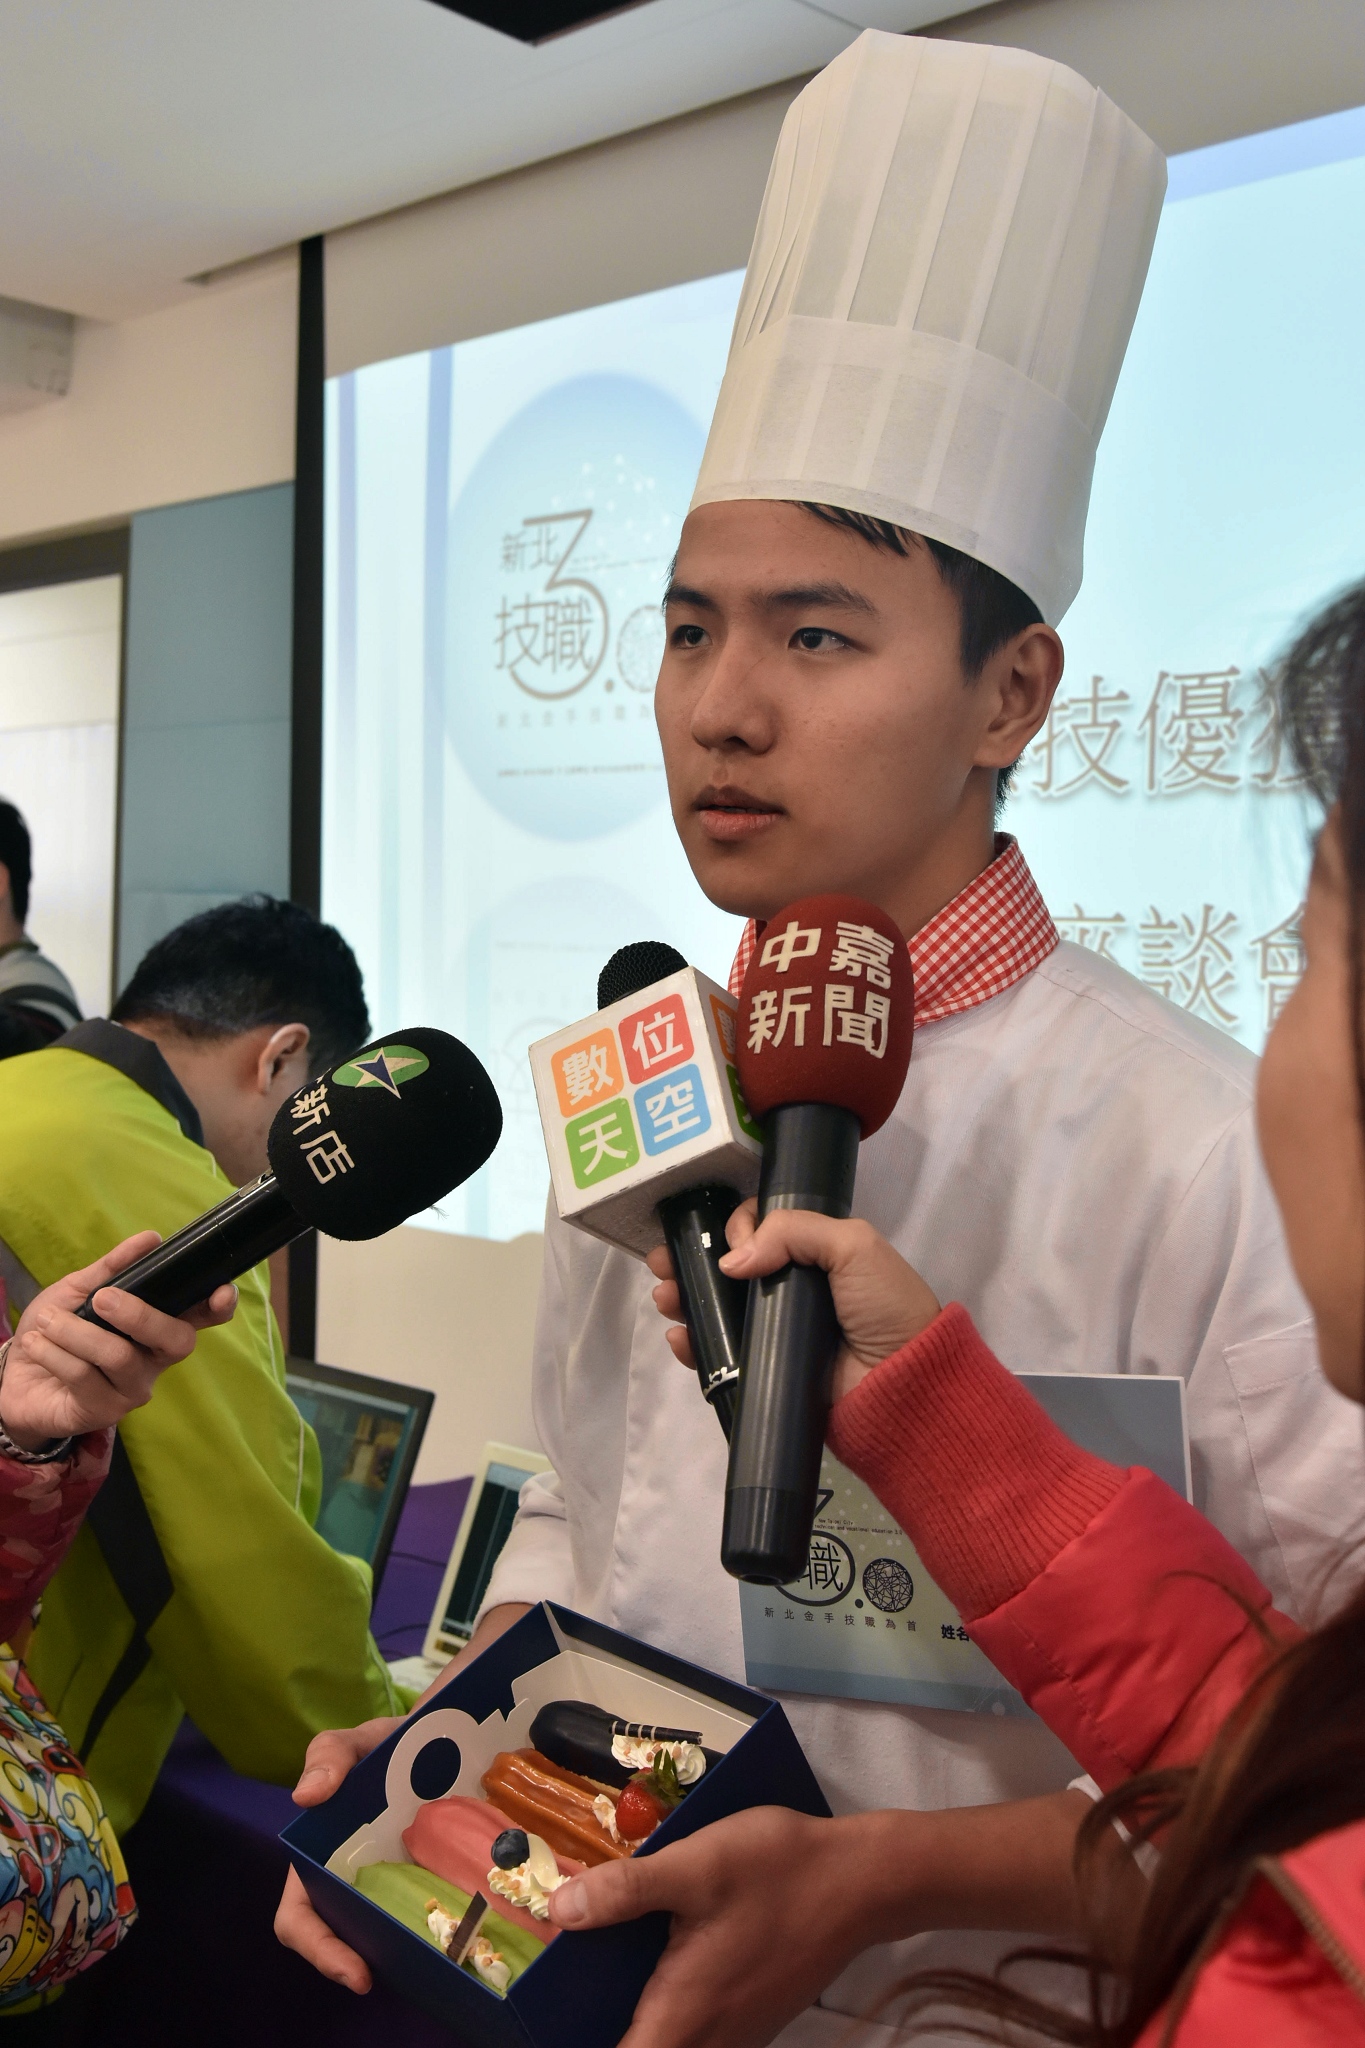 陳韋翔近期目標就是考上國立高雄餐飲大學的烘焙系